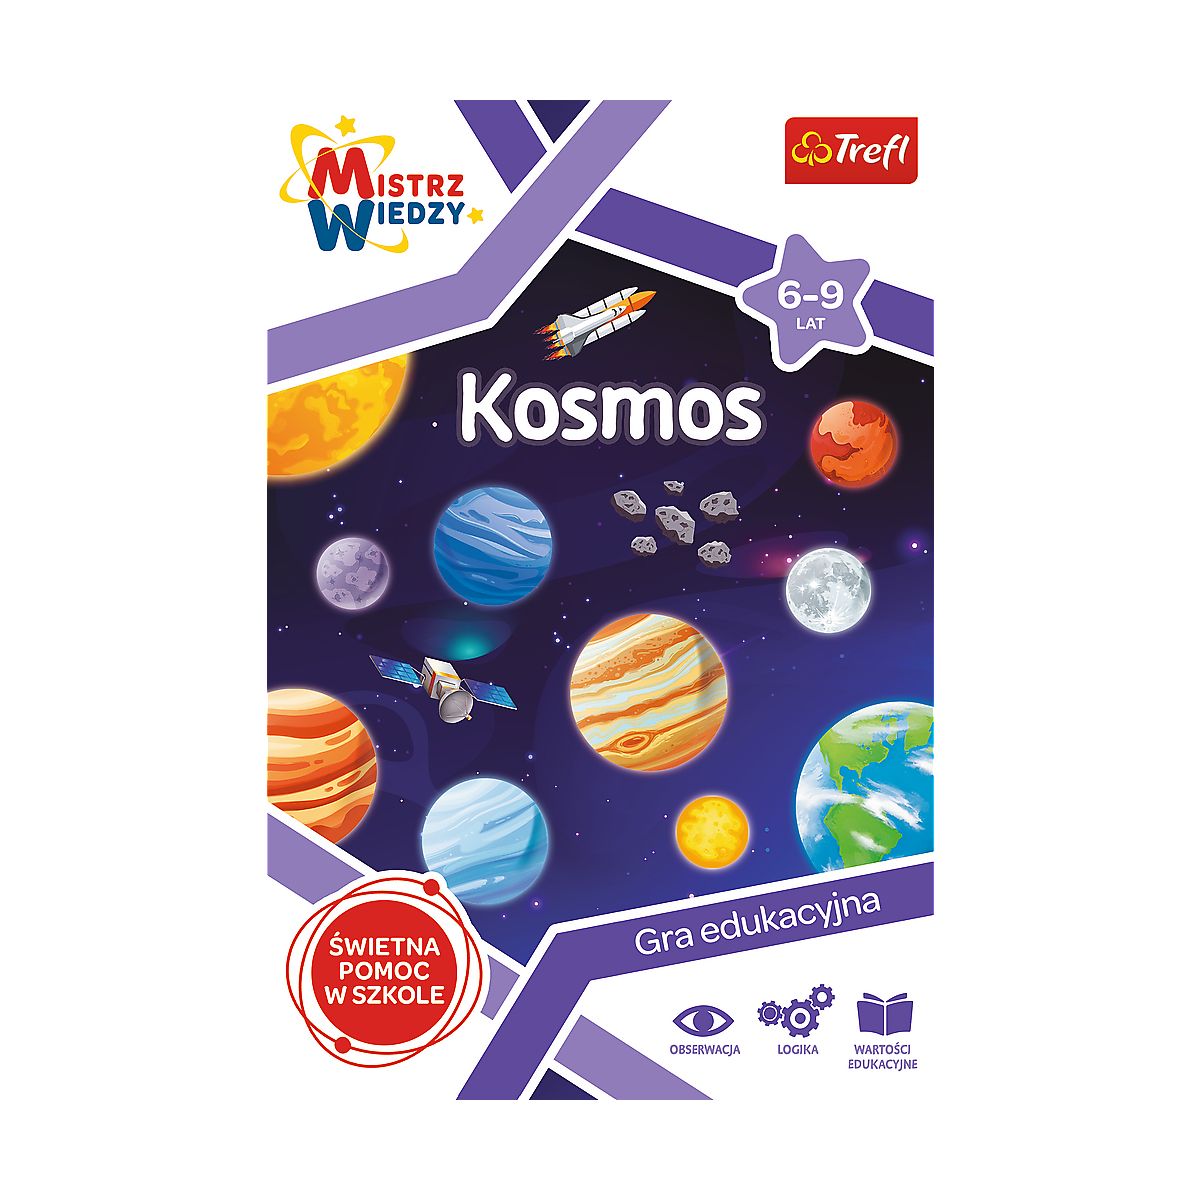 Gra edukacyjna Trefl Kosmos z Serii Mistrz Wiedzy Kosmos (01956)